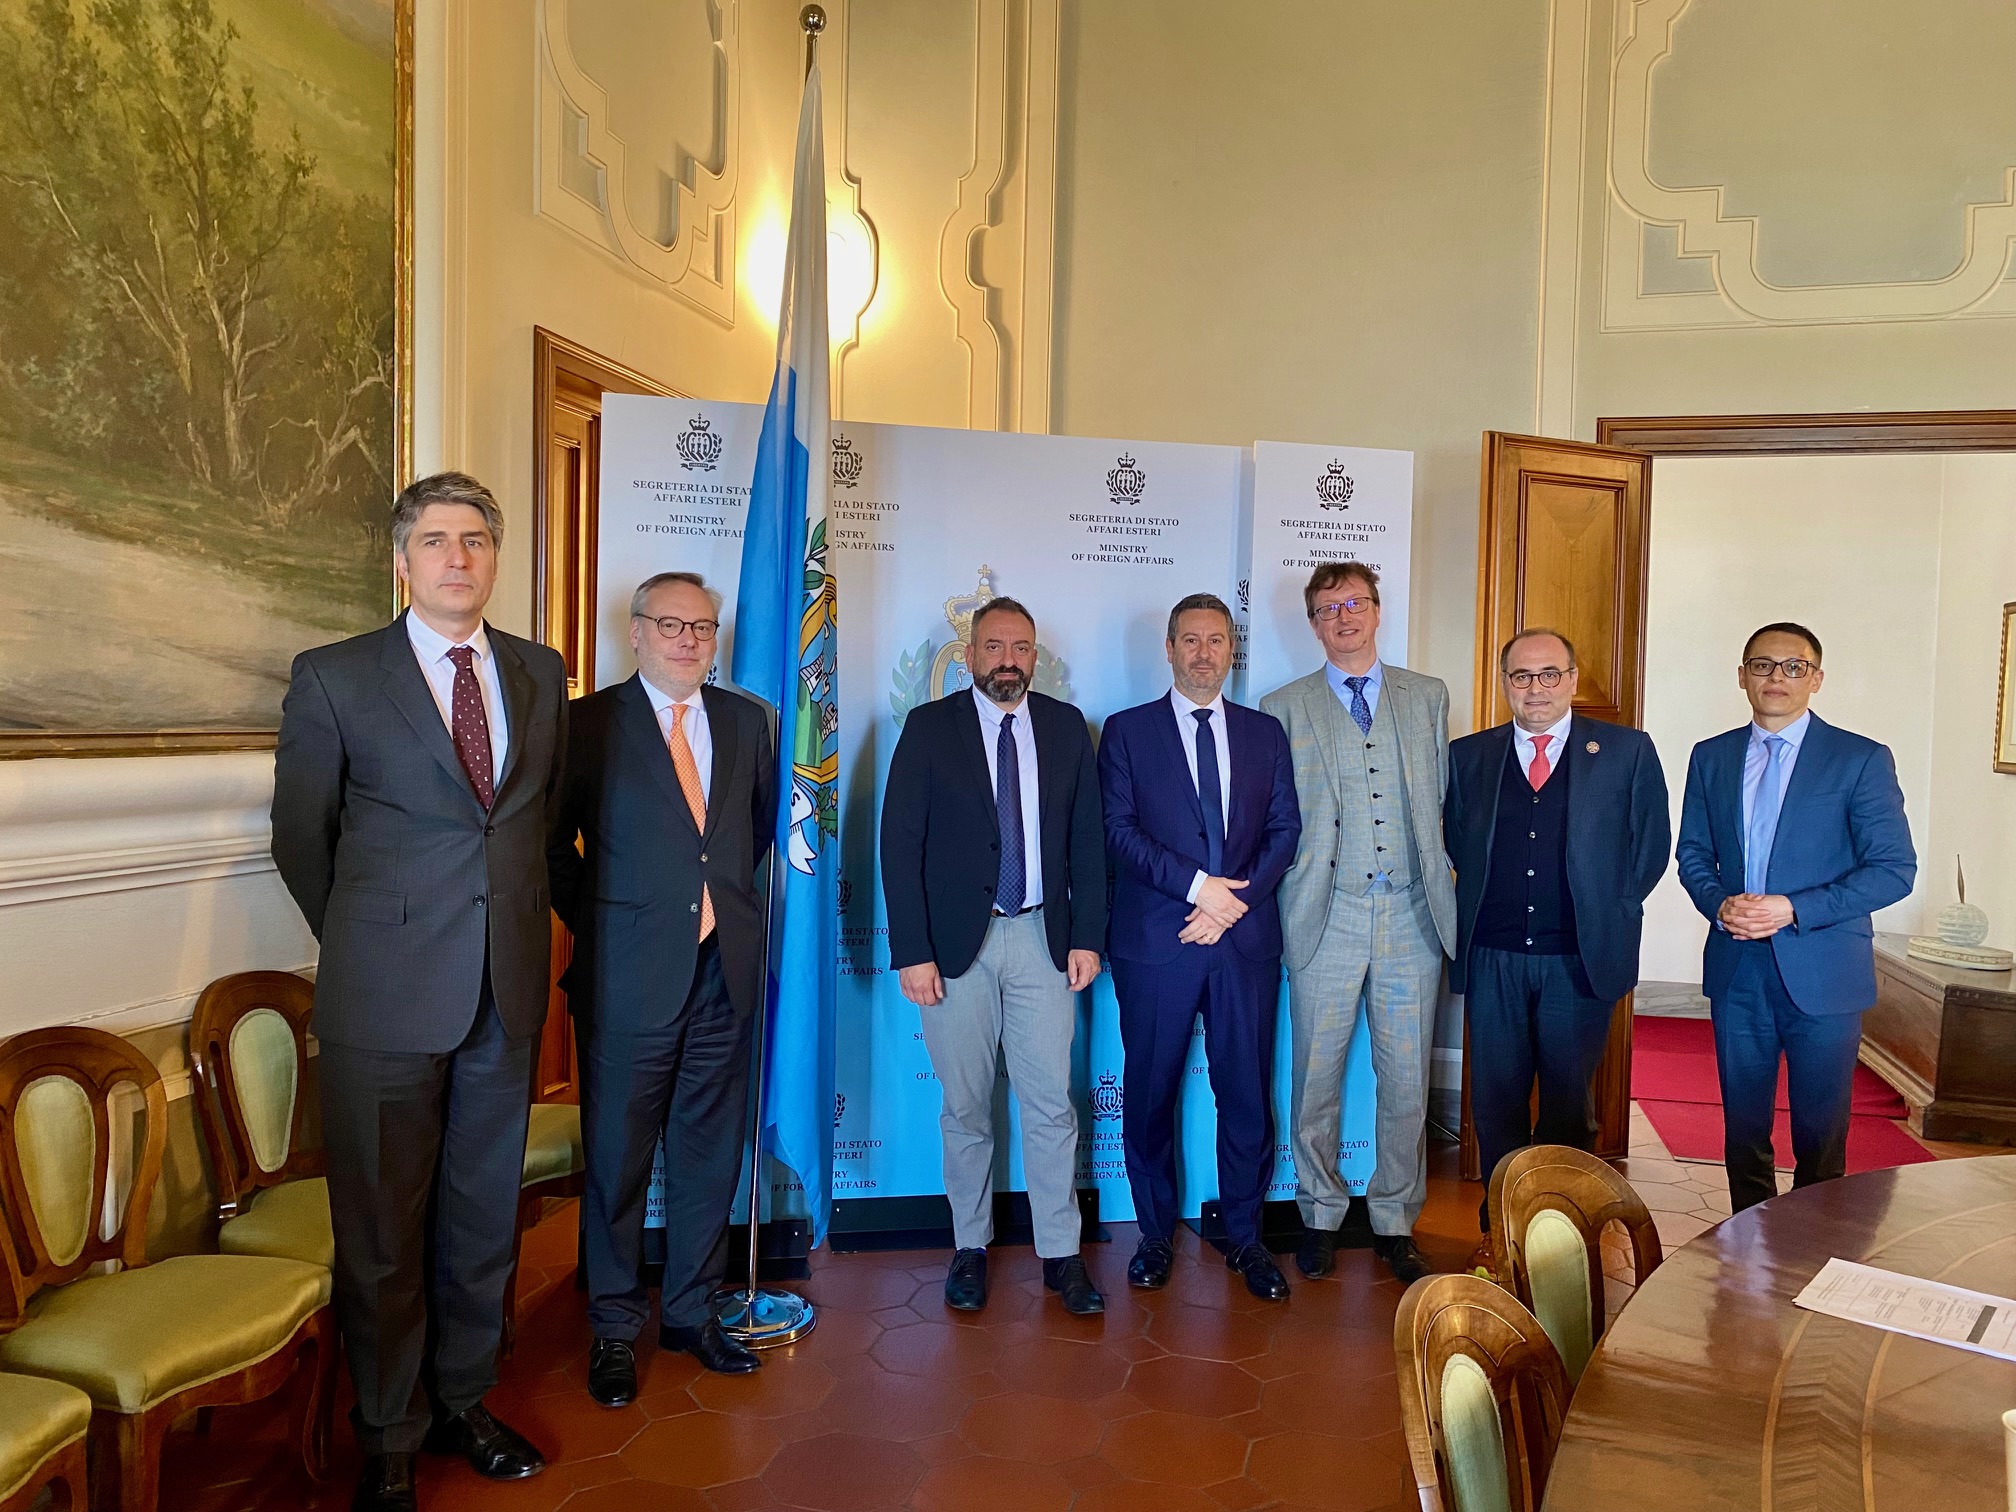 Visita della Bers a San Marino, segreterie Esteri e Finanze: In arrivo nuove opportunità per le imprese locali